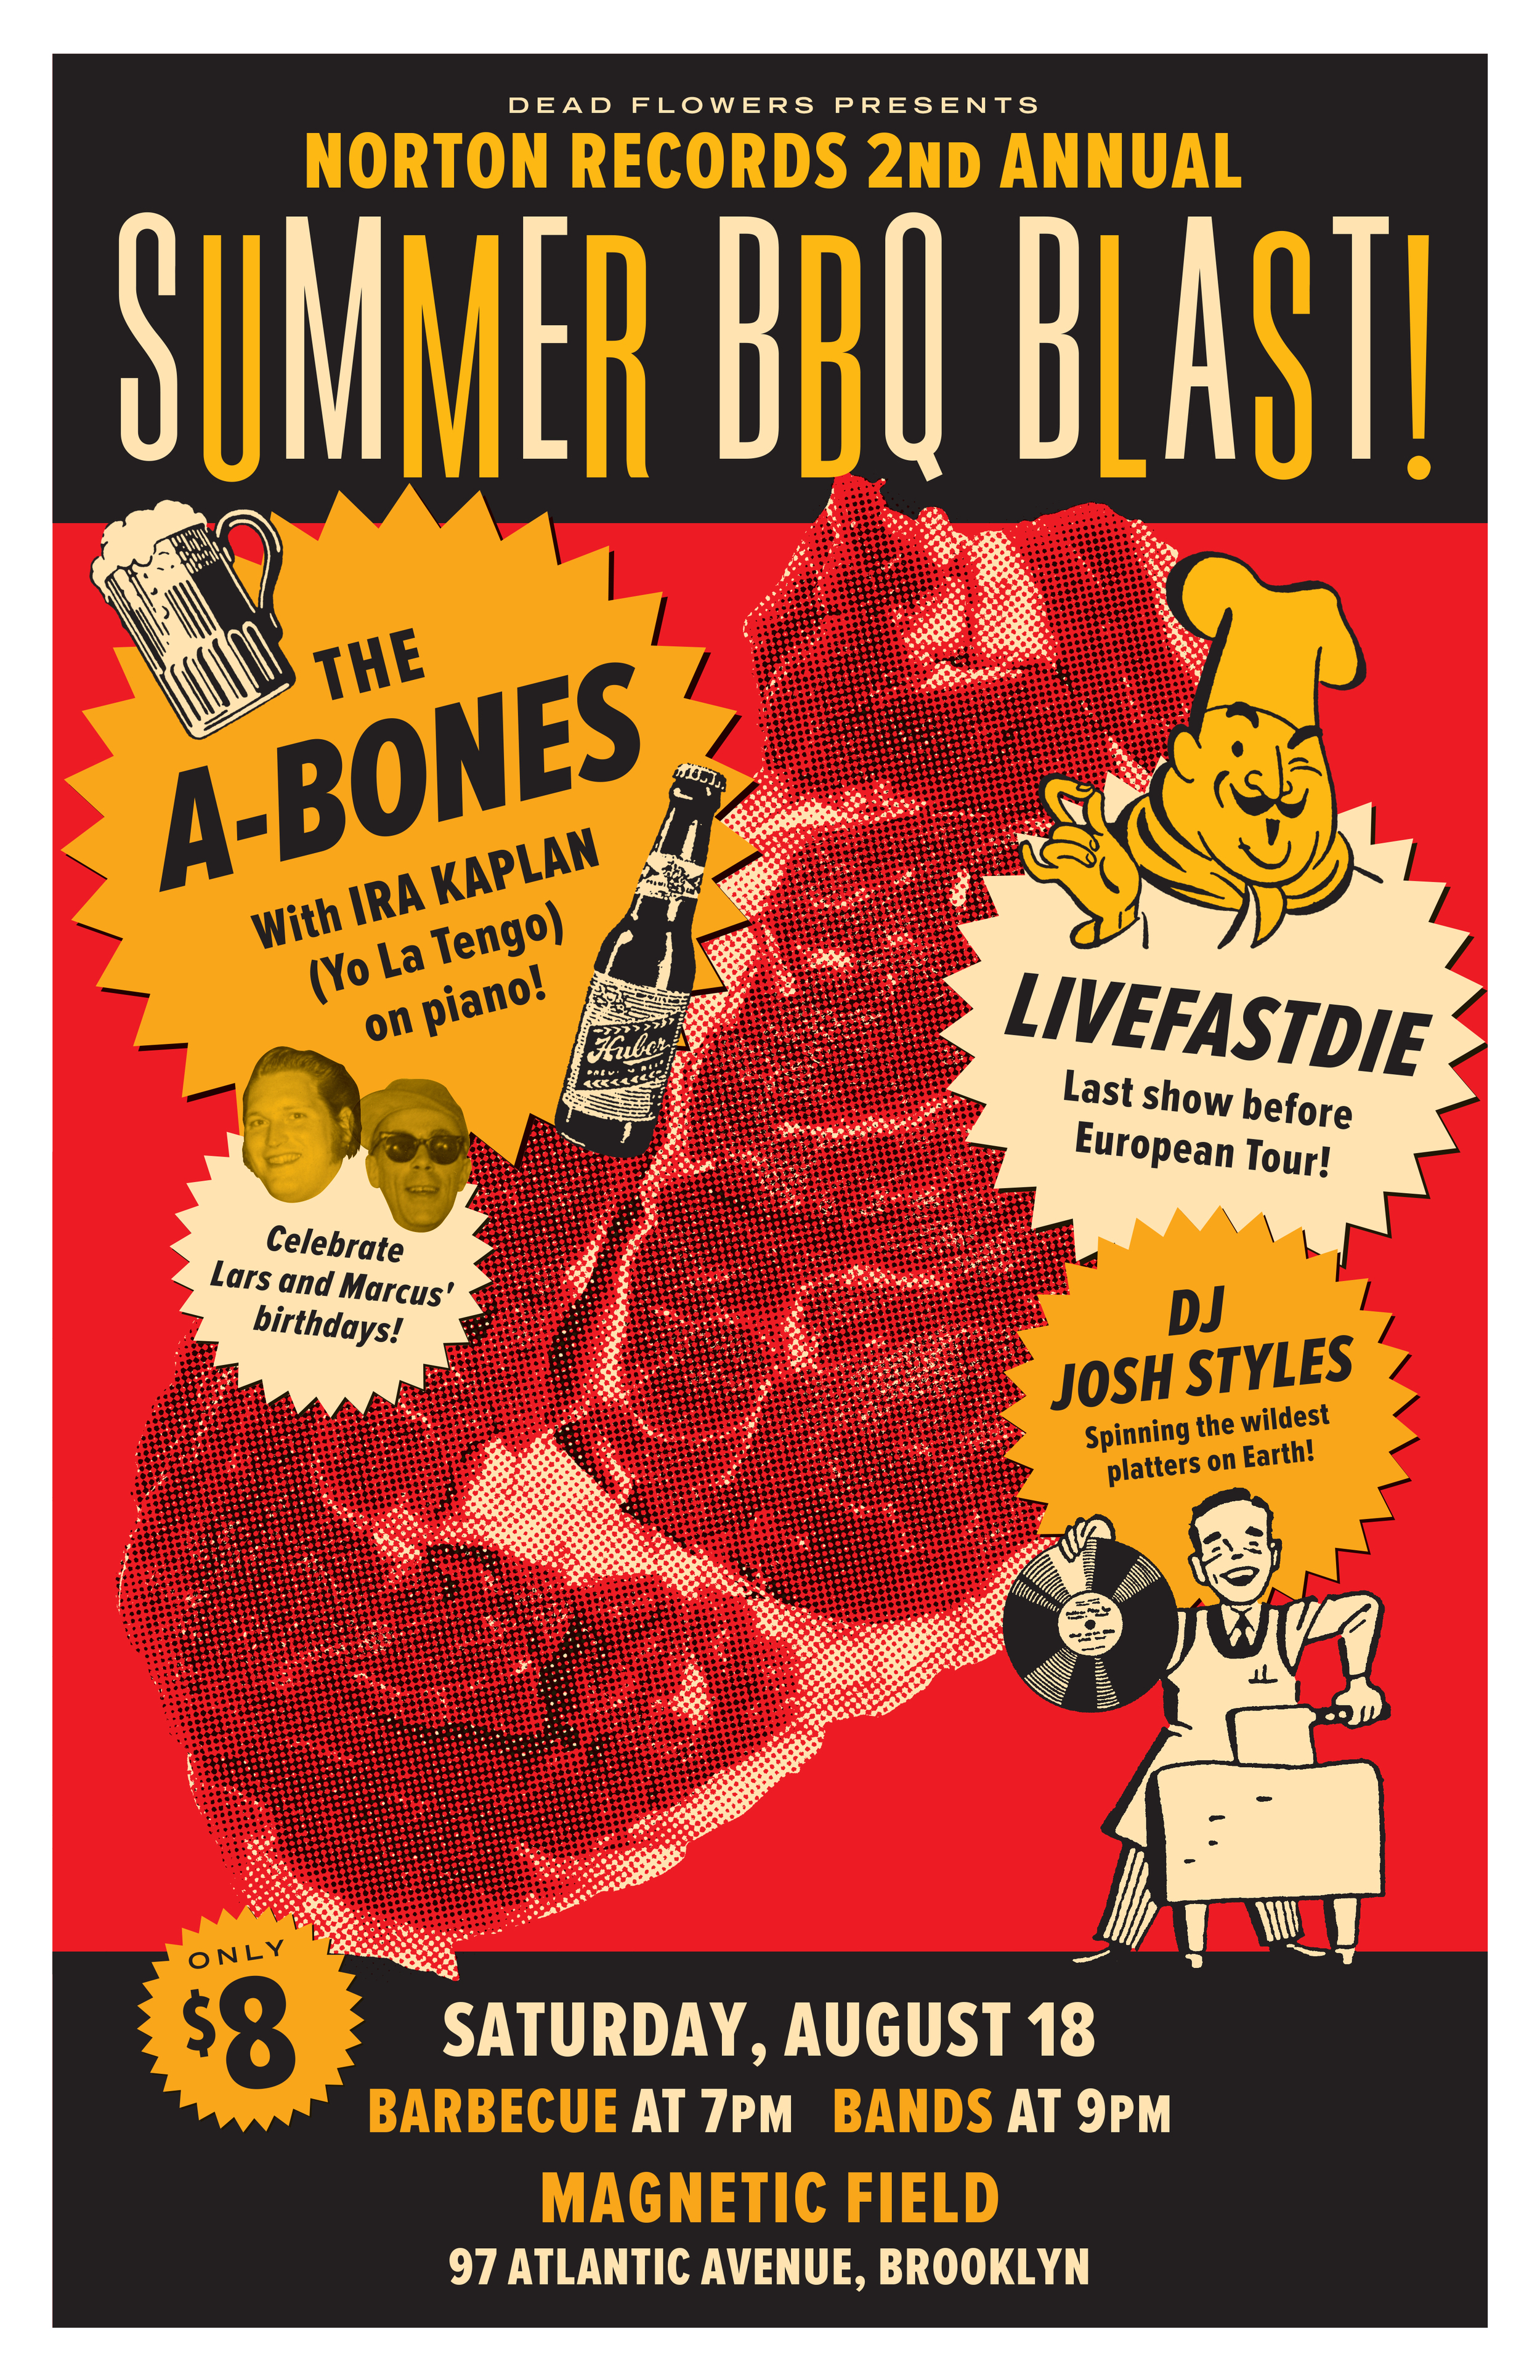 A-Bones BBQ Blast poster